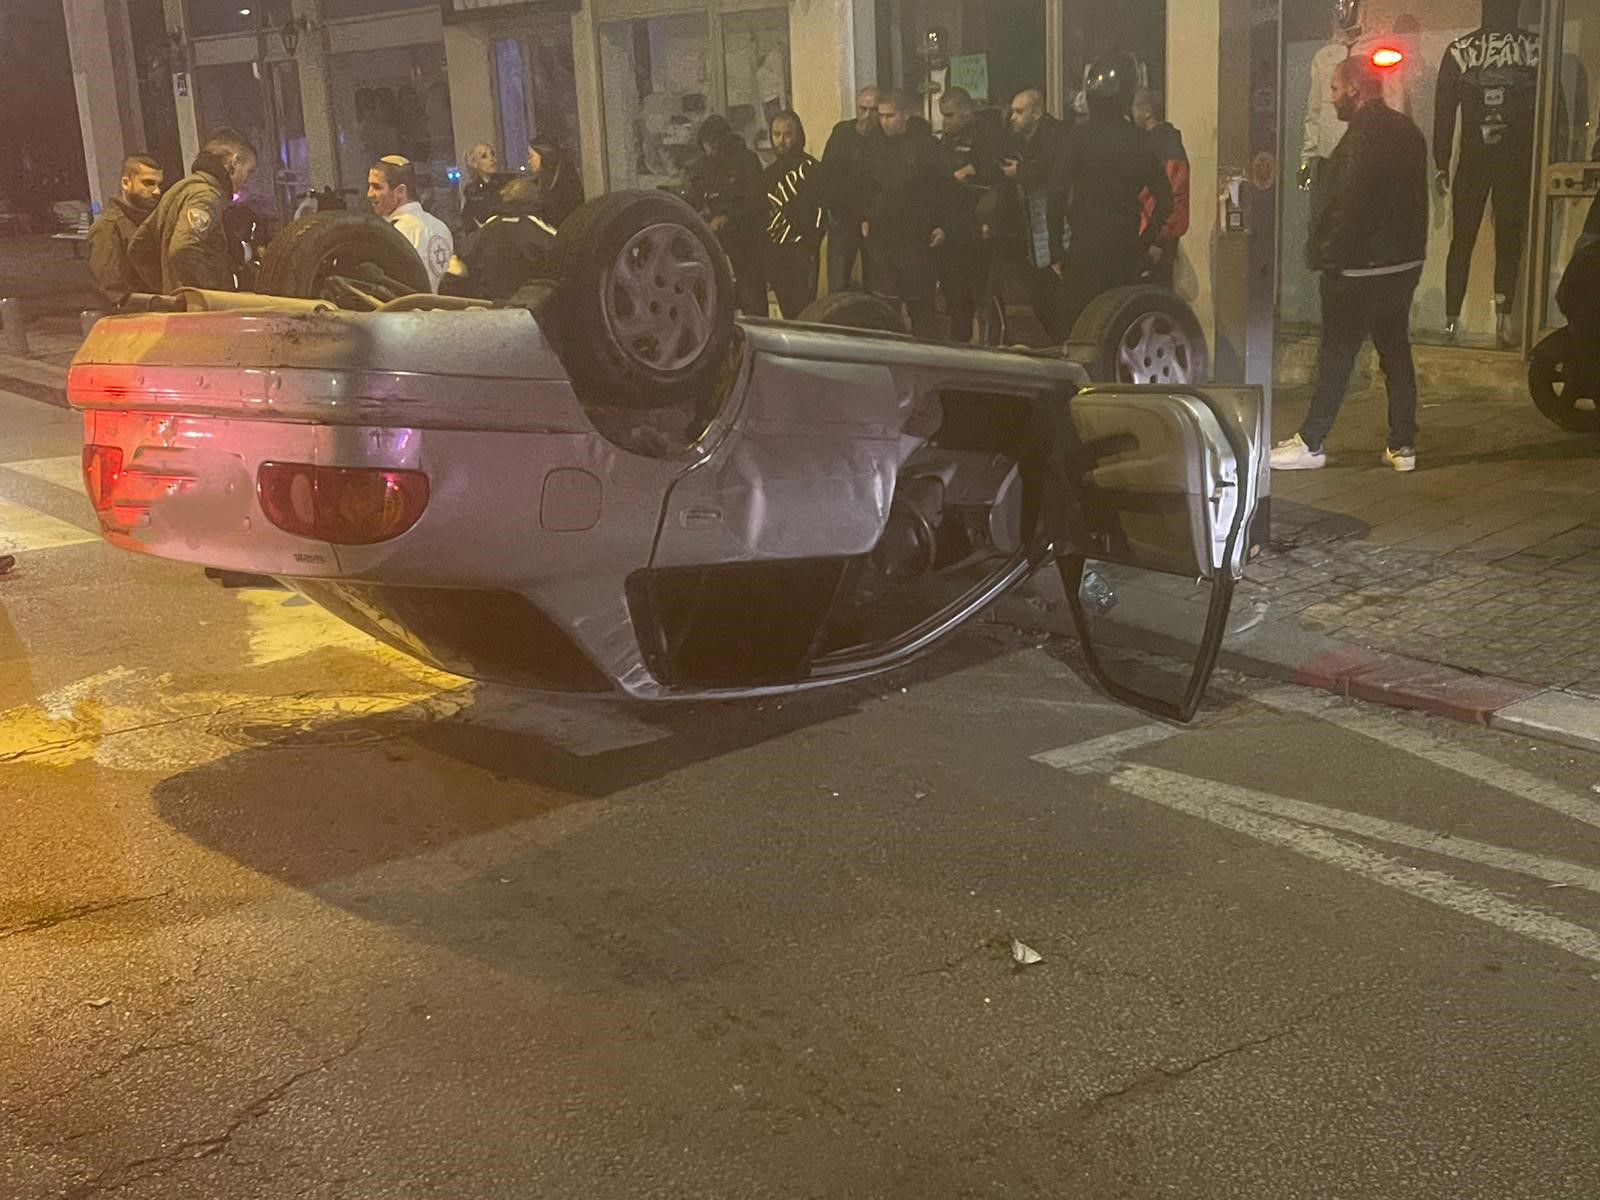 يافا: حادث طرق بين مركبتين بعد منتصف الليل يخلف اصابات طفيفة